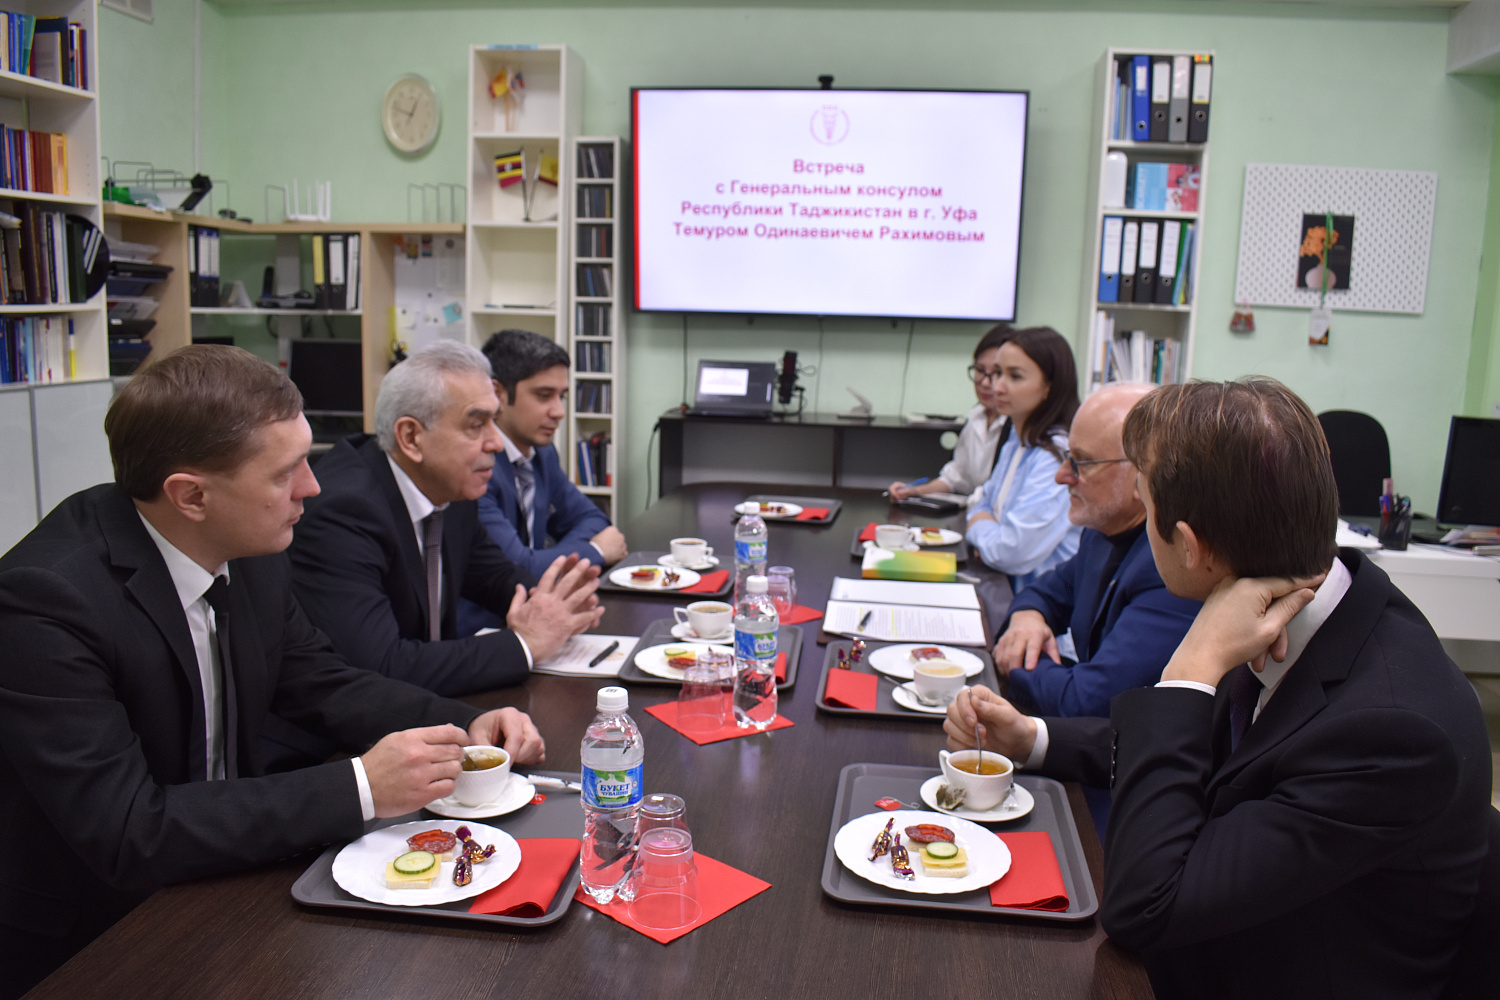 9 декабря 2022 г. ТПП Чувашской Республики посетил Генеральный консул Республики Таджикистан в г. Уфа Темур Одинаевич Рахимов.